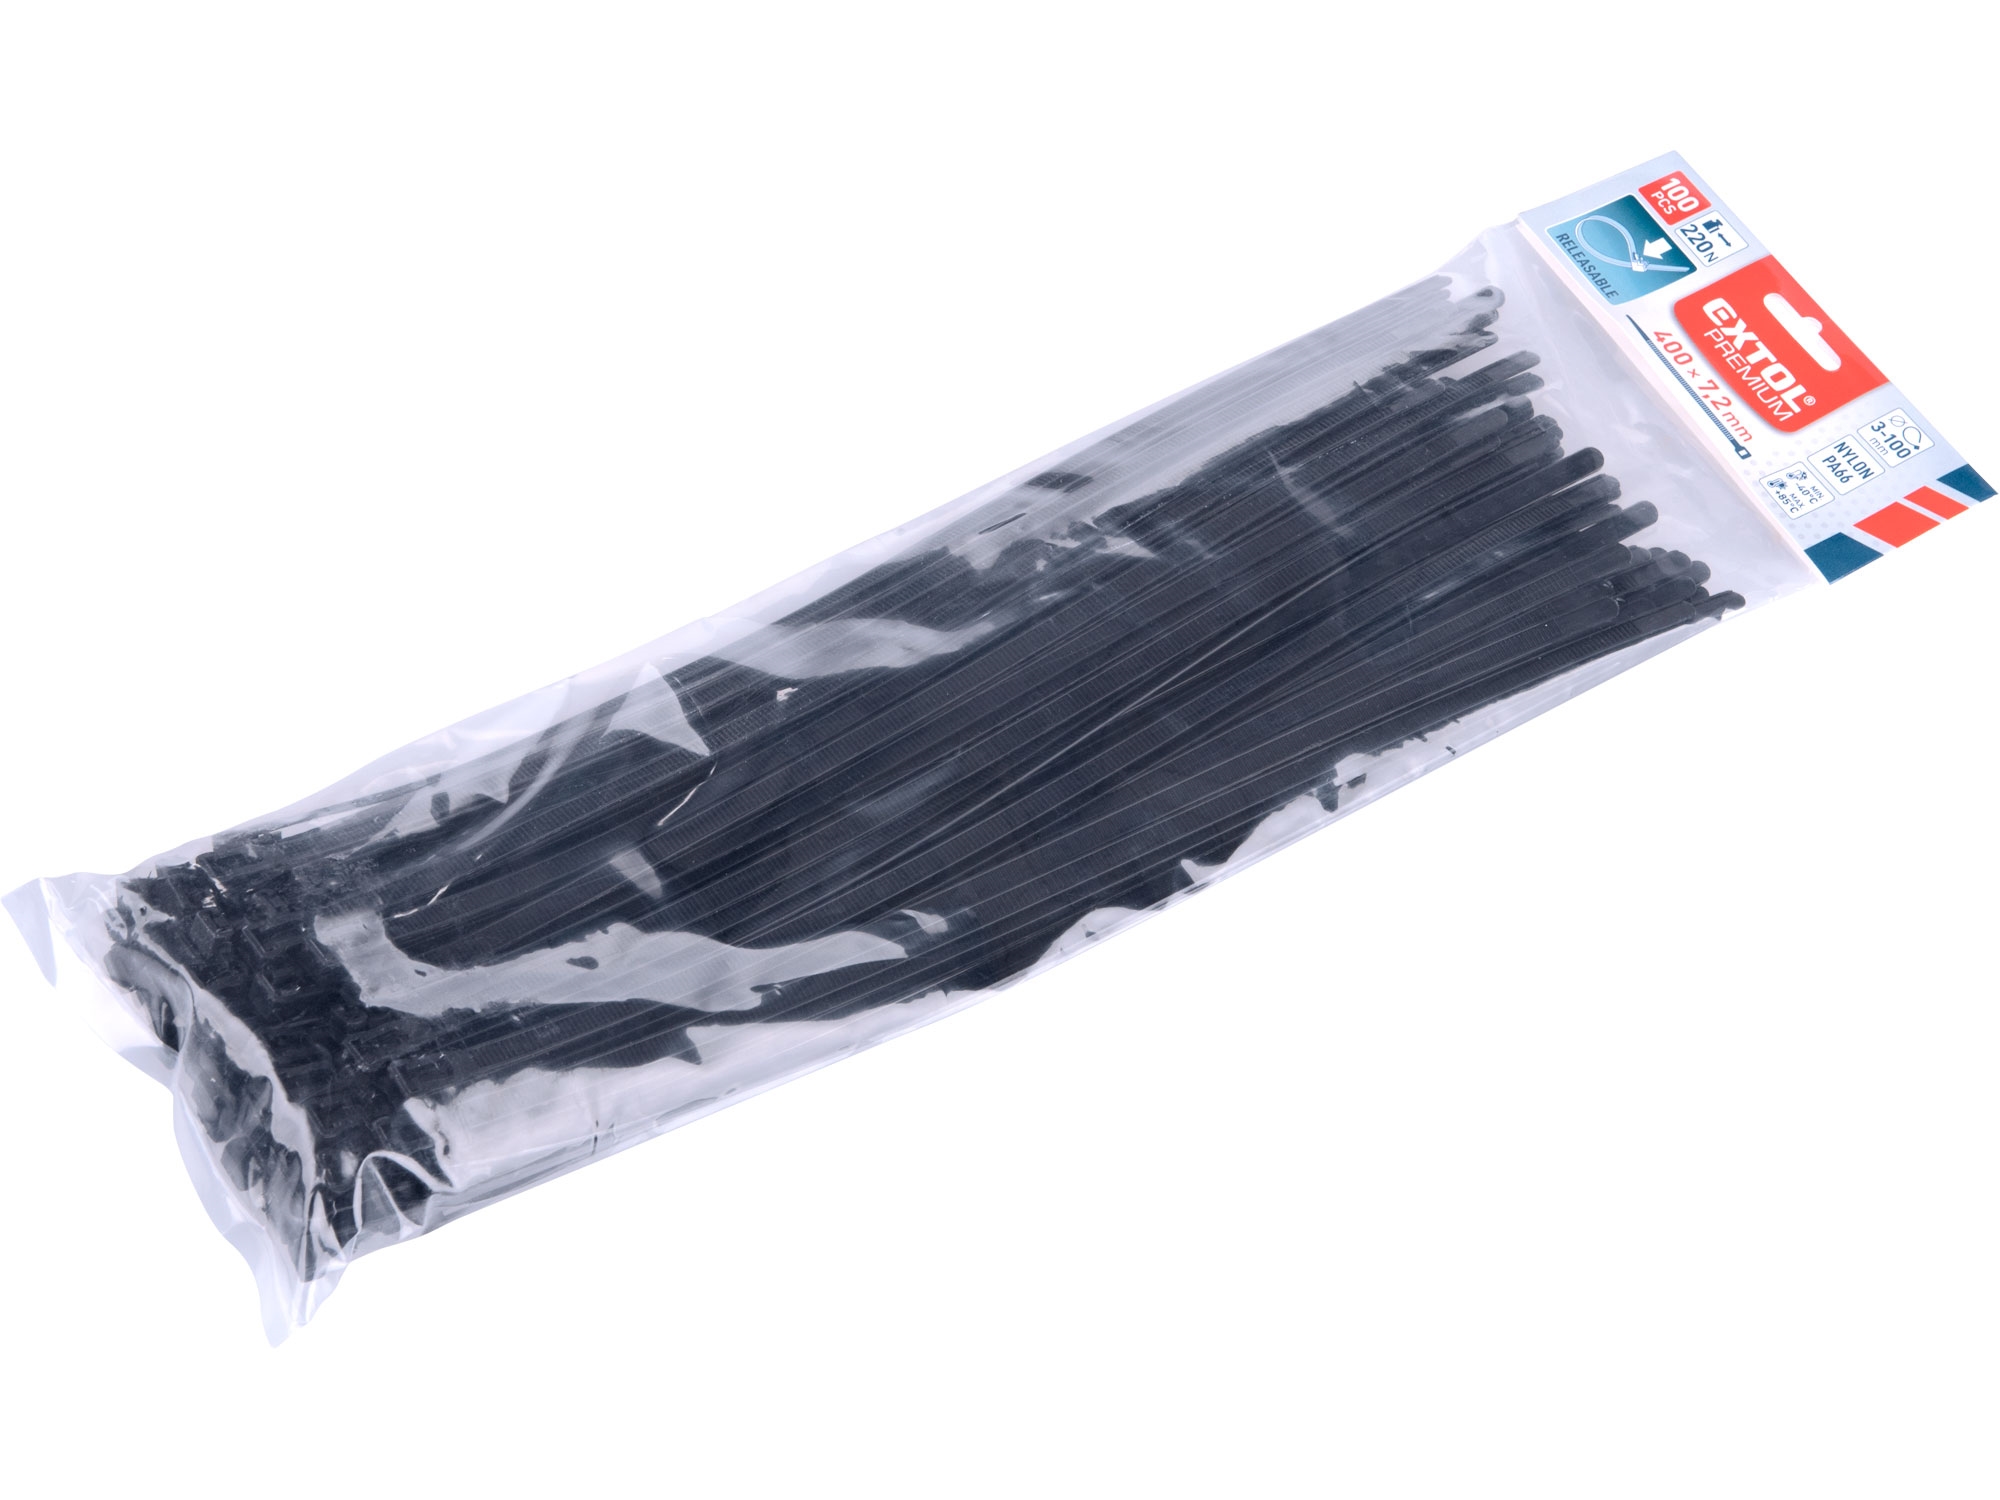 pásky stahovací černé, rozpojitelné, 400x7,2mm, 100ks, nylon PA66 - EXTOL PREMIUM